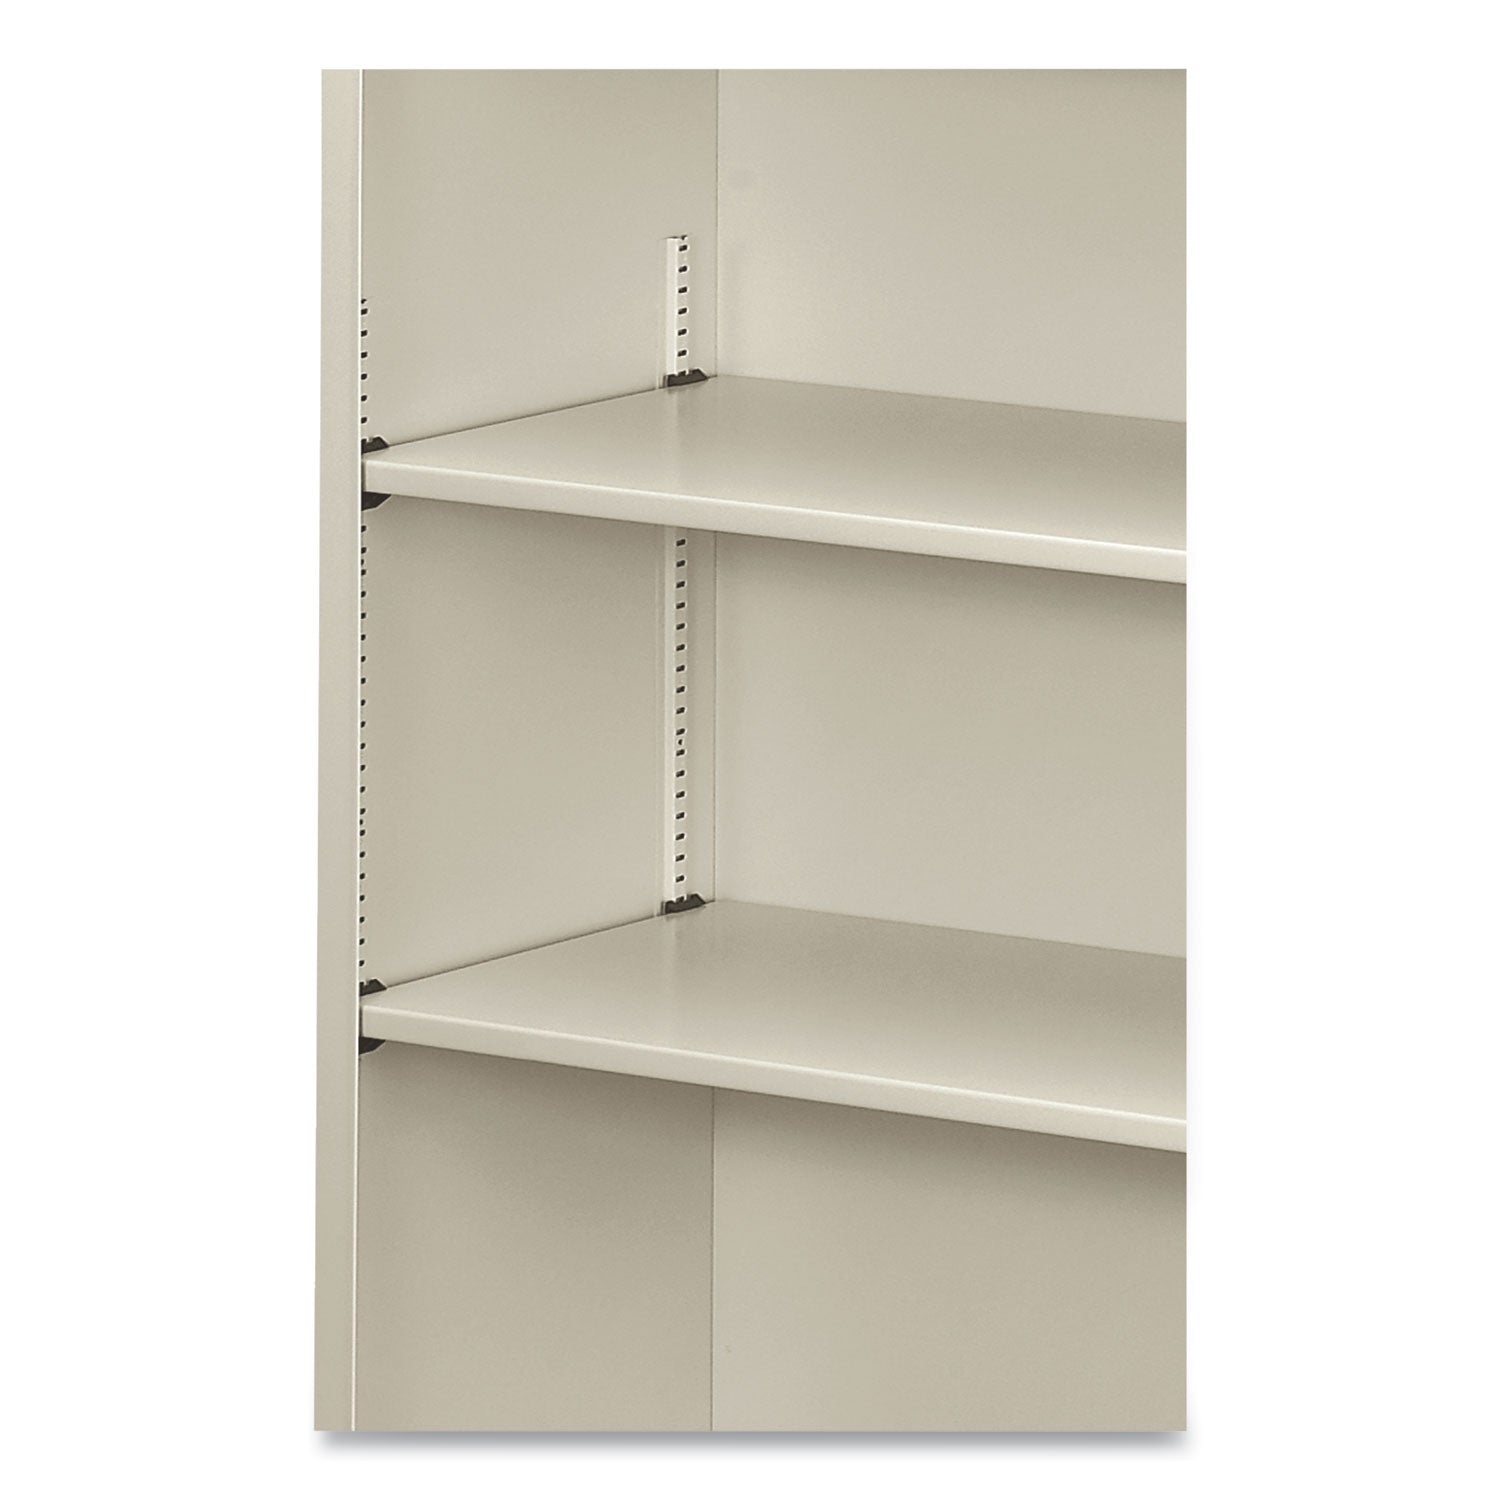 Metal Bookcase, Three-Shelf, 34.5w x 12.63d x 41h, Light Gray - 